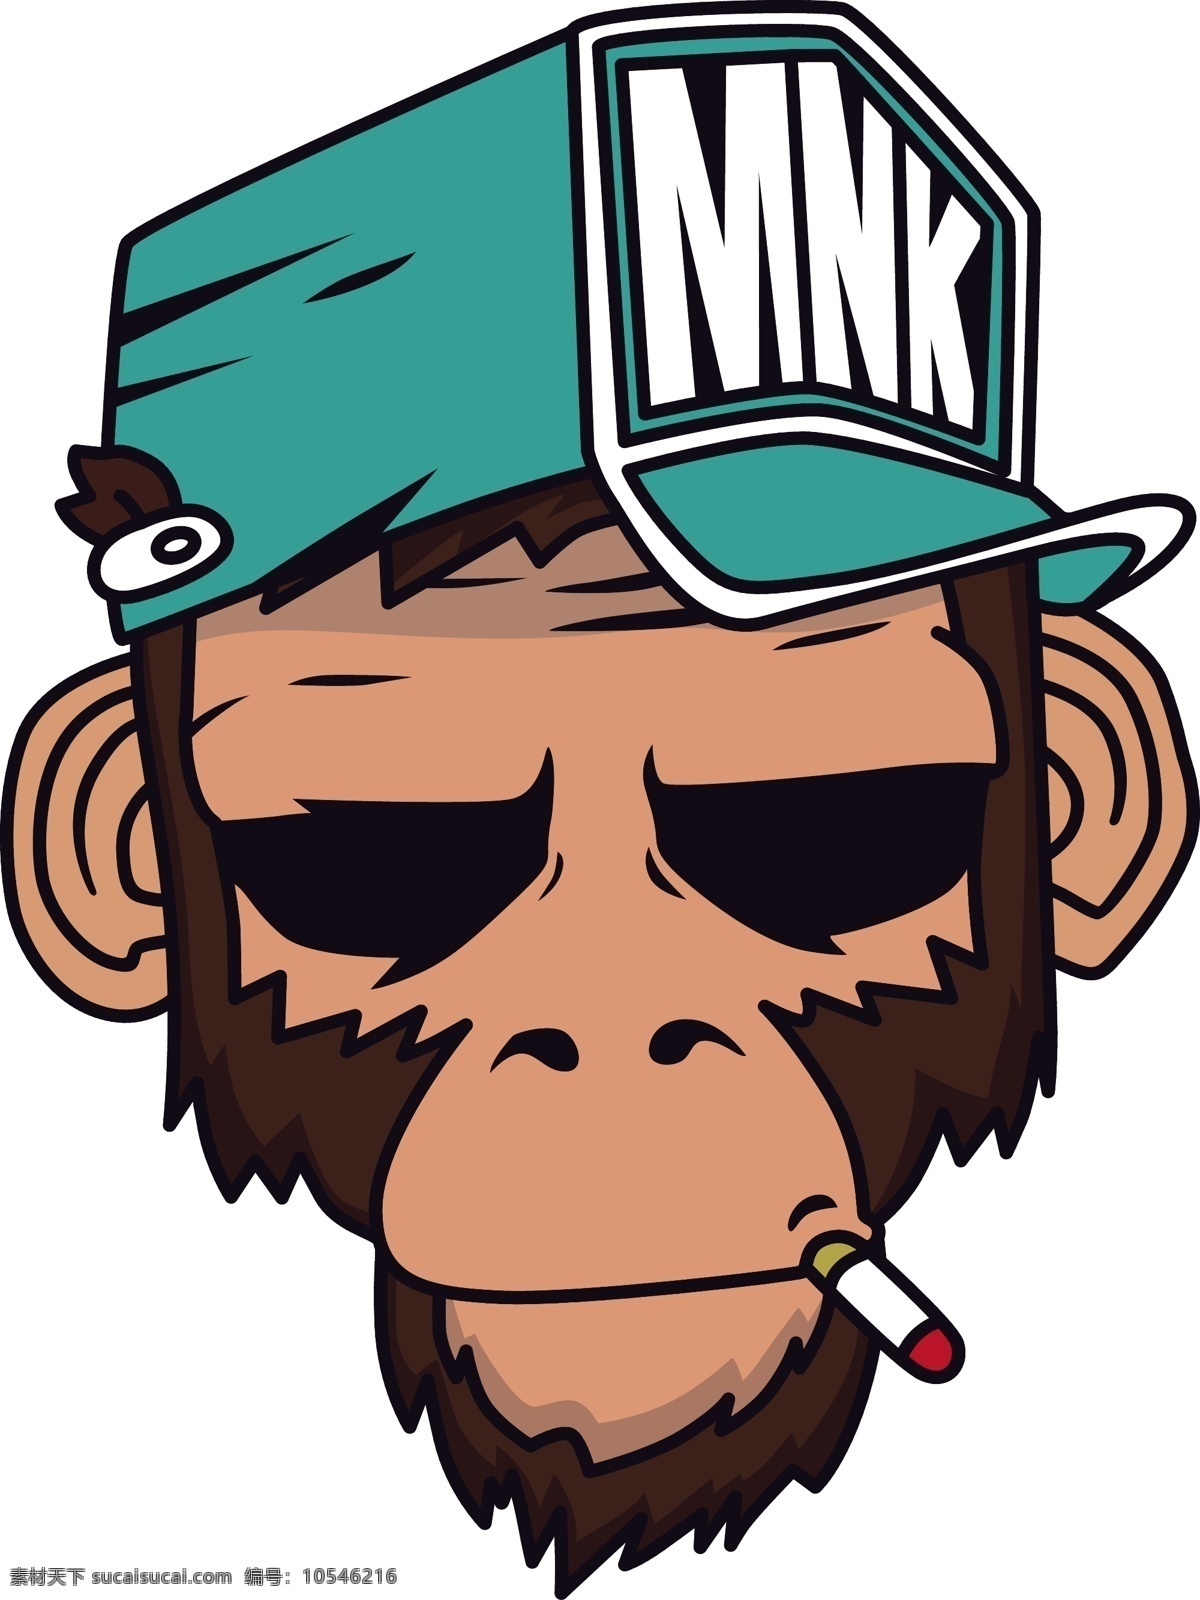 卡通 猴子 矢量 戴帽子的猴子 抽烟的猴子 卡通猴子 可爱的猴子 装酷的猴子 矢量素材 动物猴子 卡通猩猩 动物图案 班服素材 广告